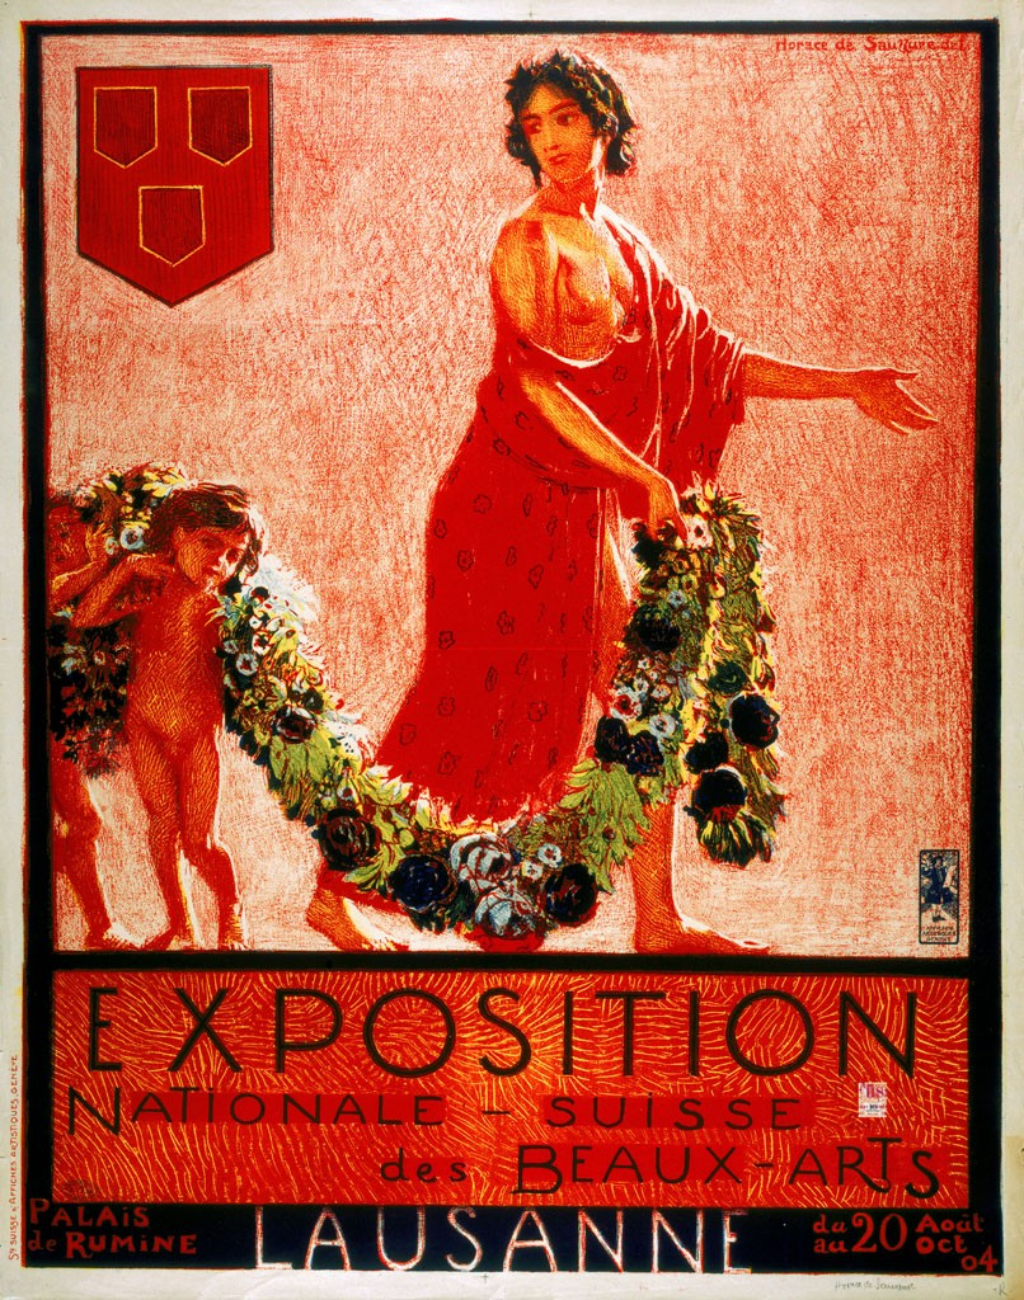 Affiche de l'Exposition Nationale Suisse des Beaux-Arts de 1904, Lausanne